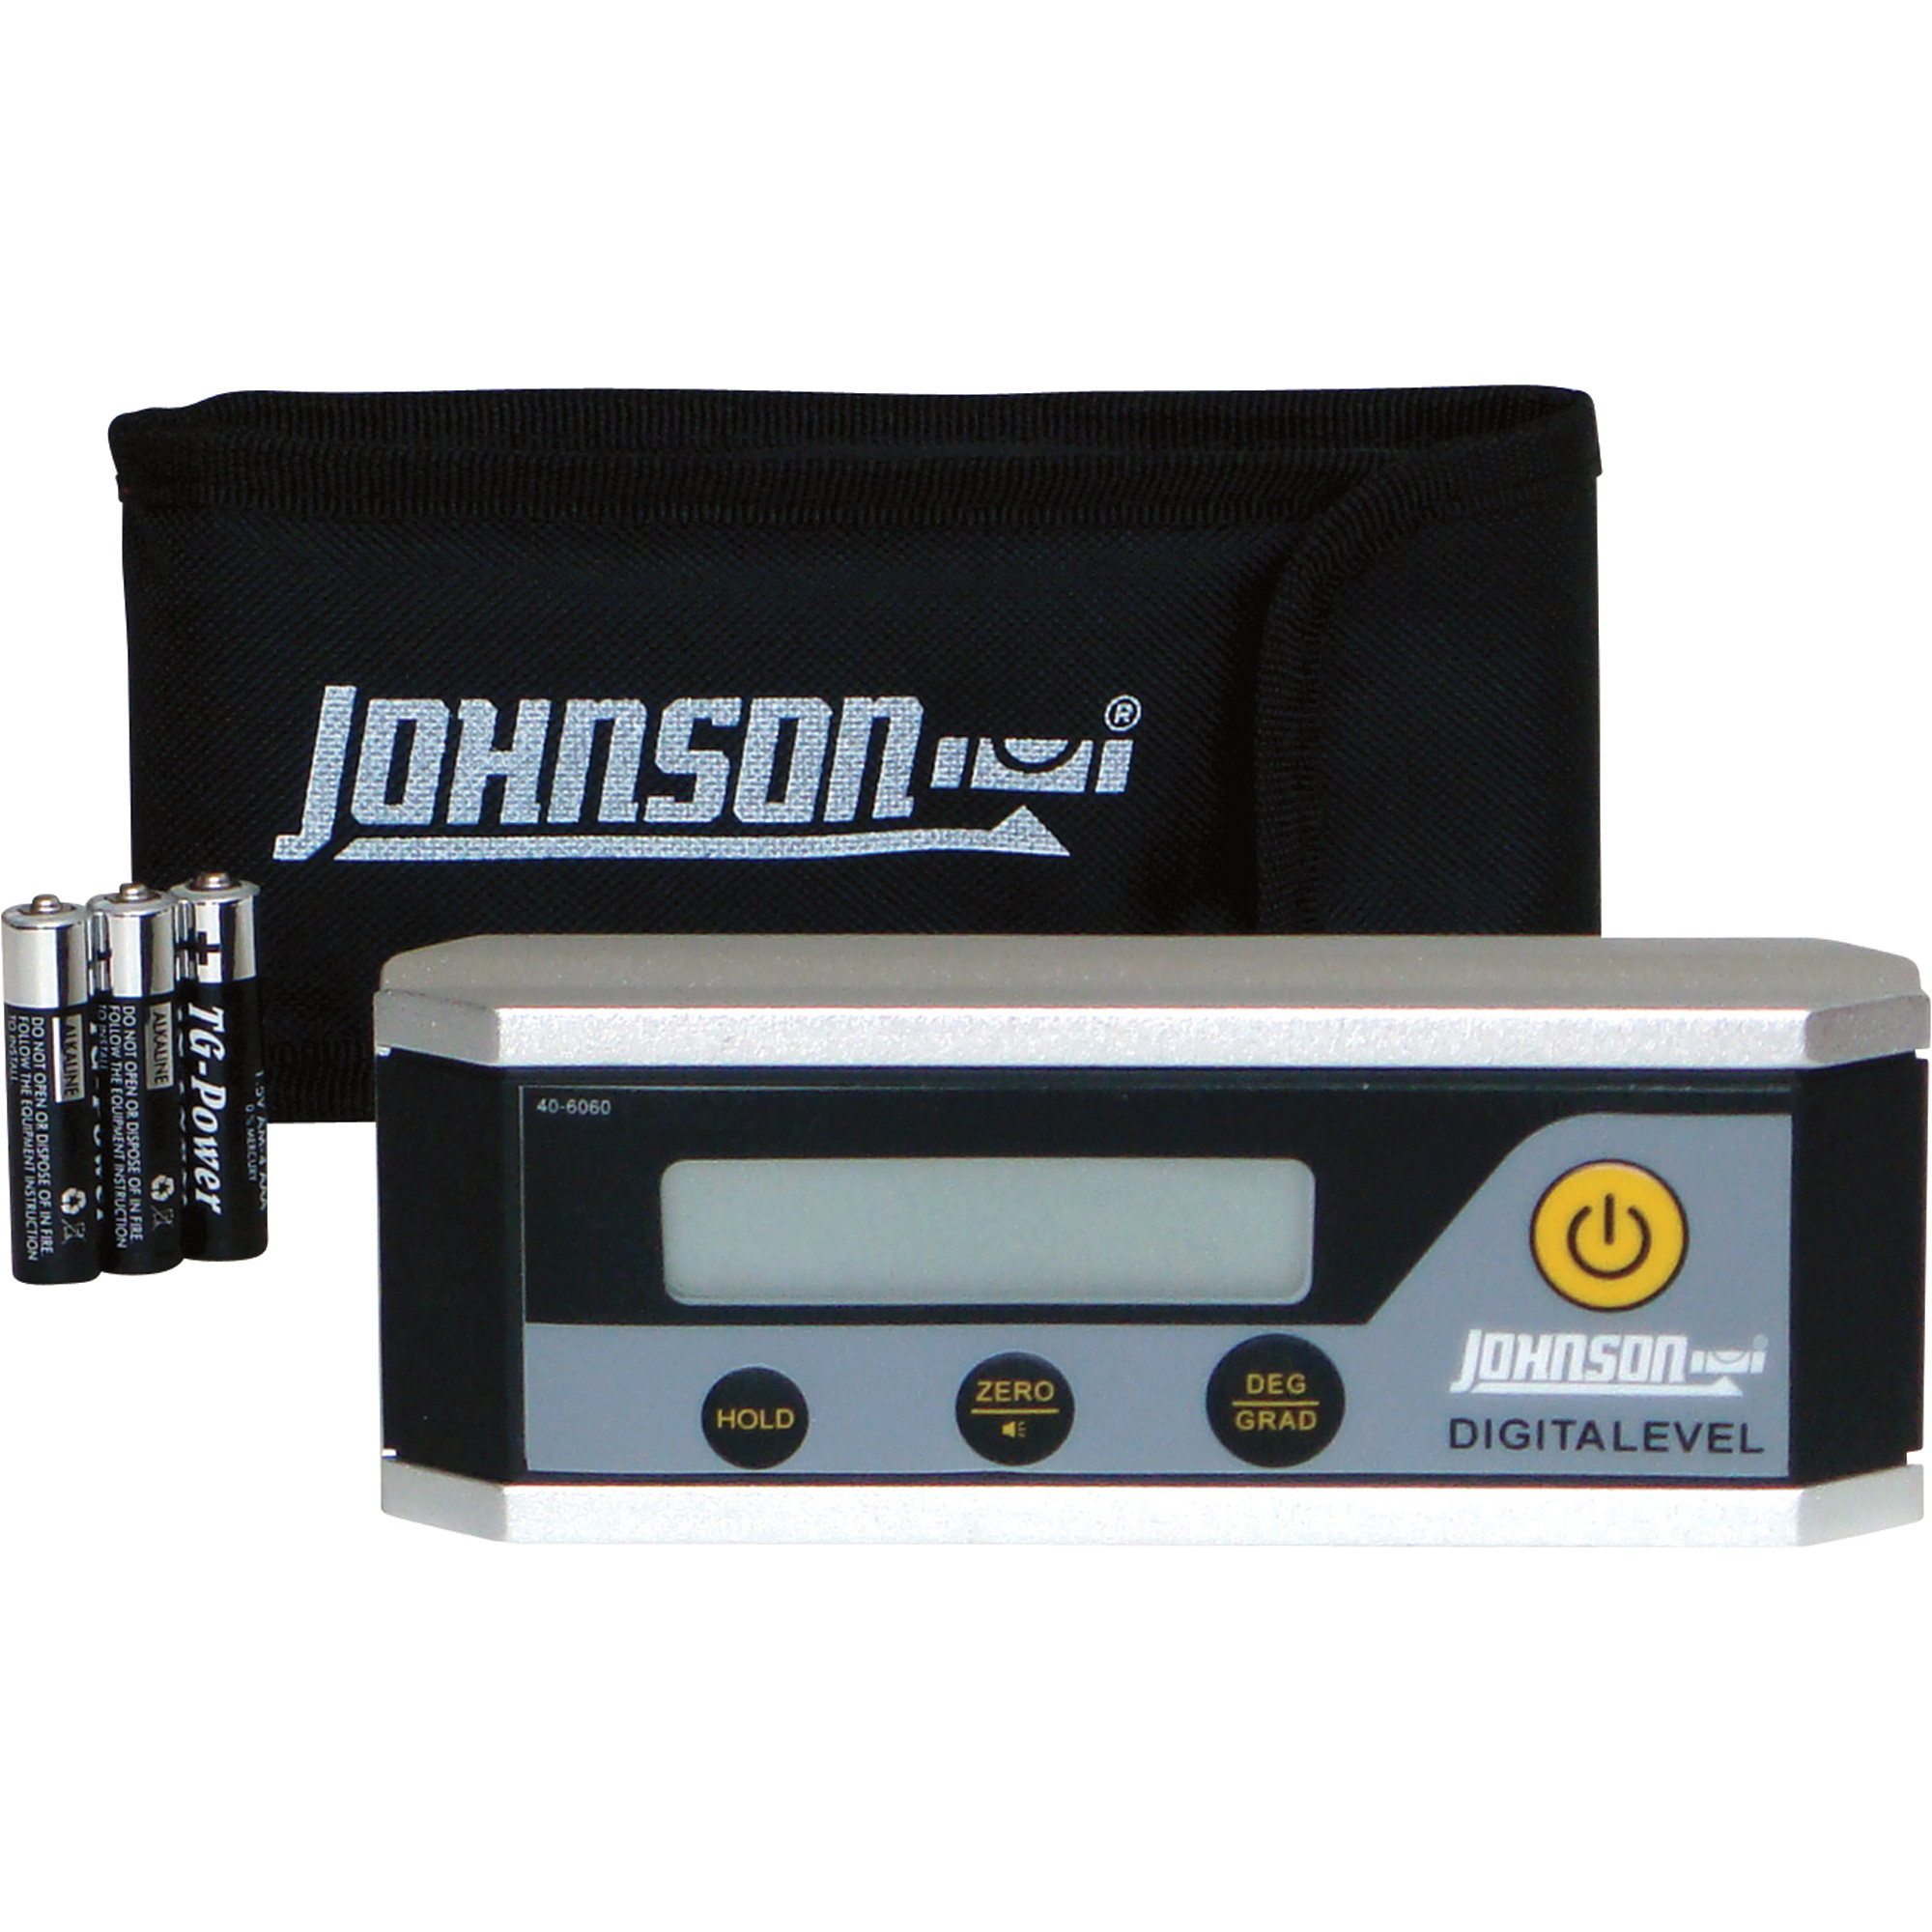 Johnson Level & Tool Electronic Level Inclinometer, Model 40-6060